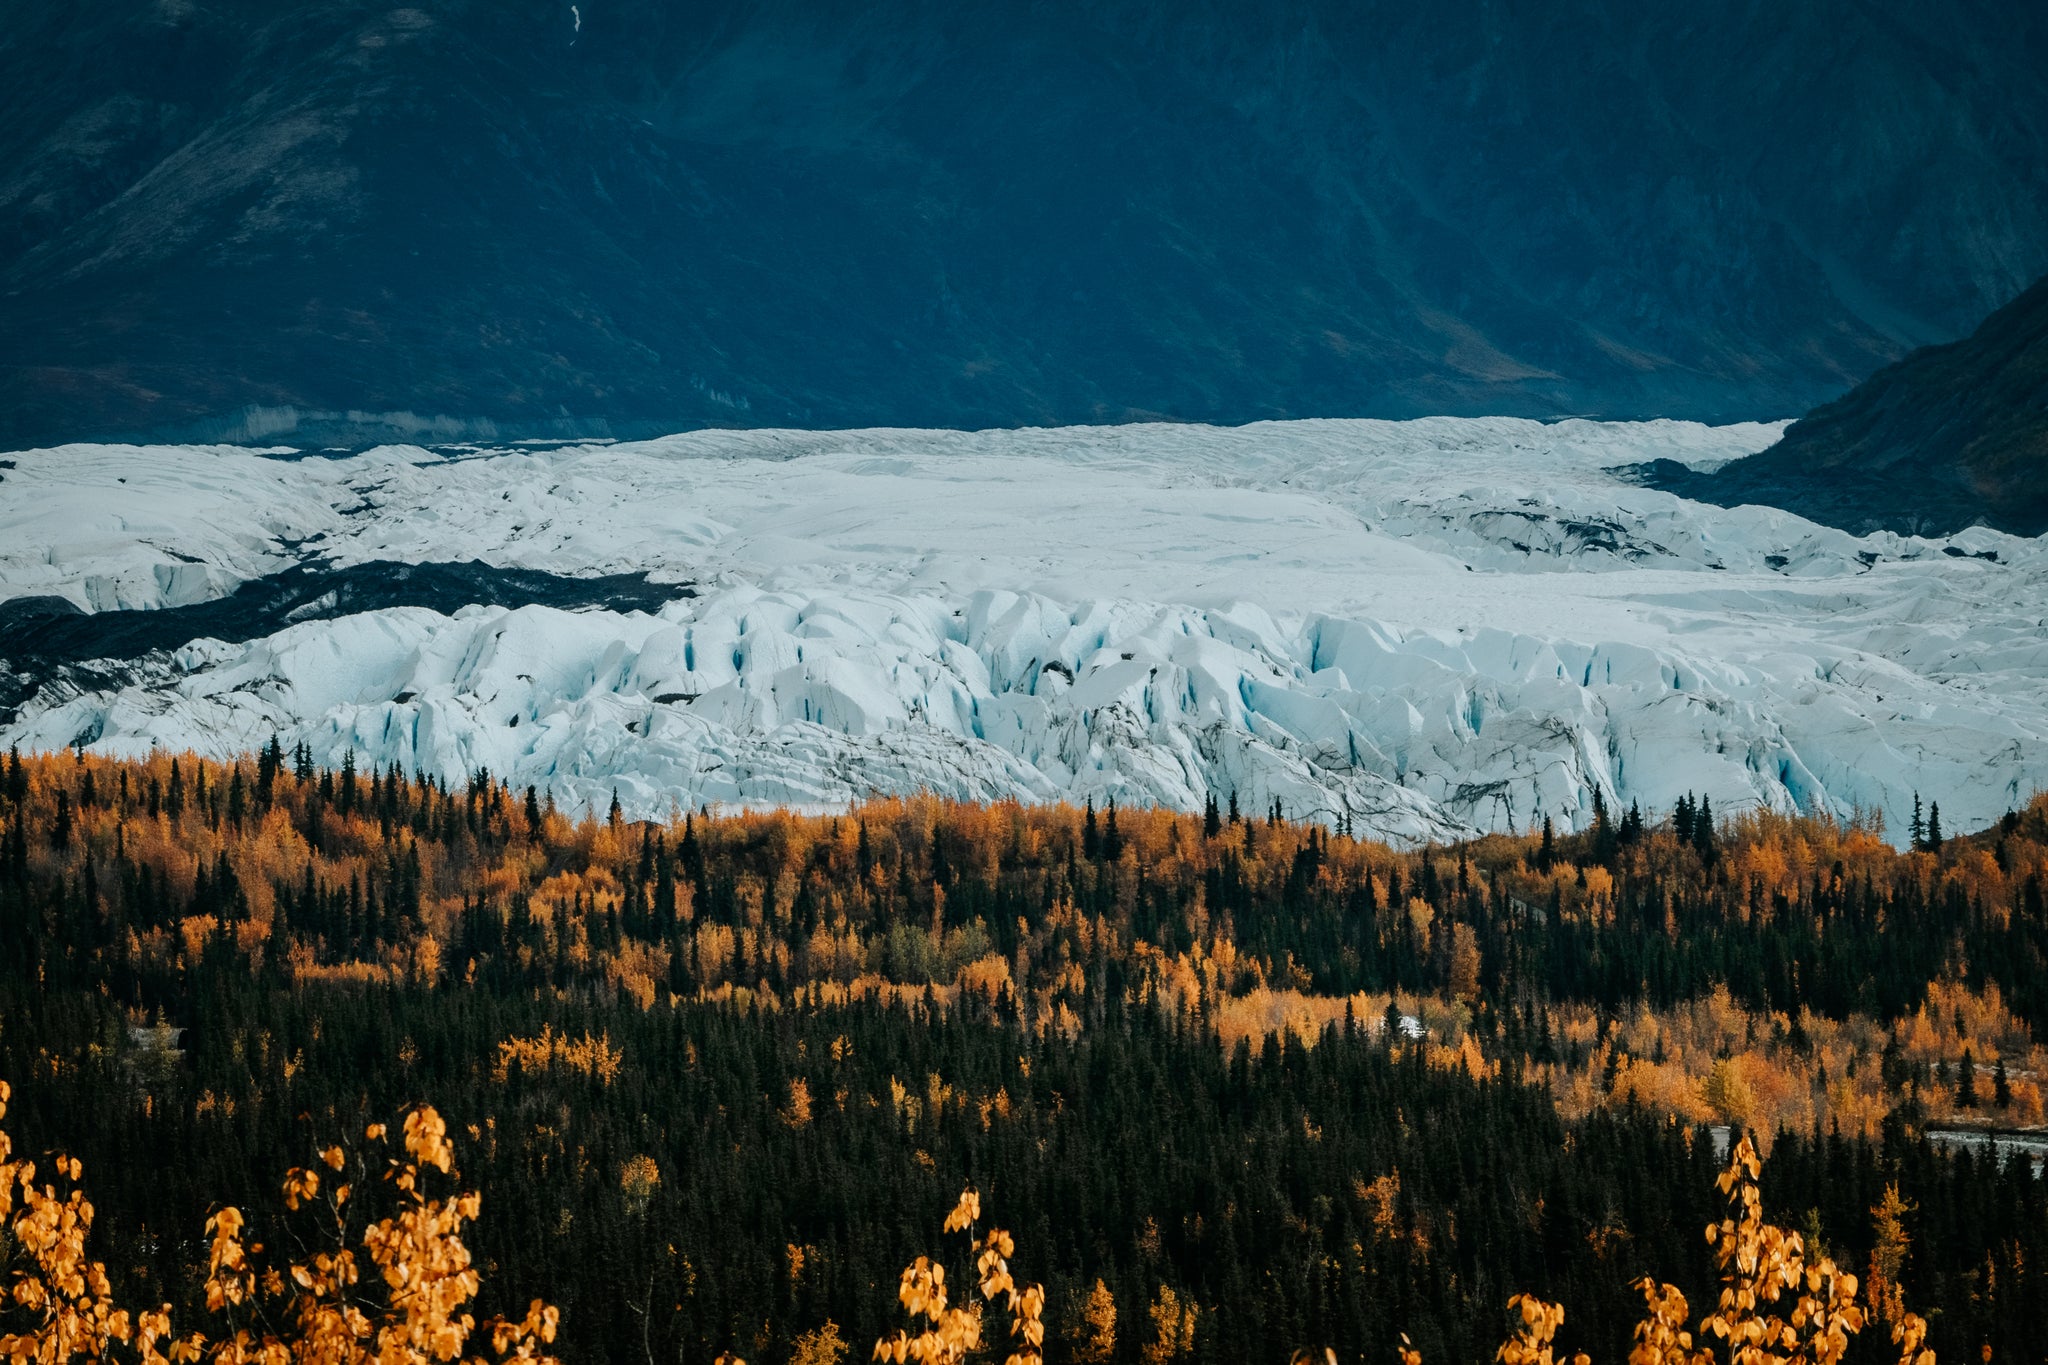 Tyler Stallings glacier in Alaska packraft trip